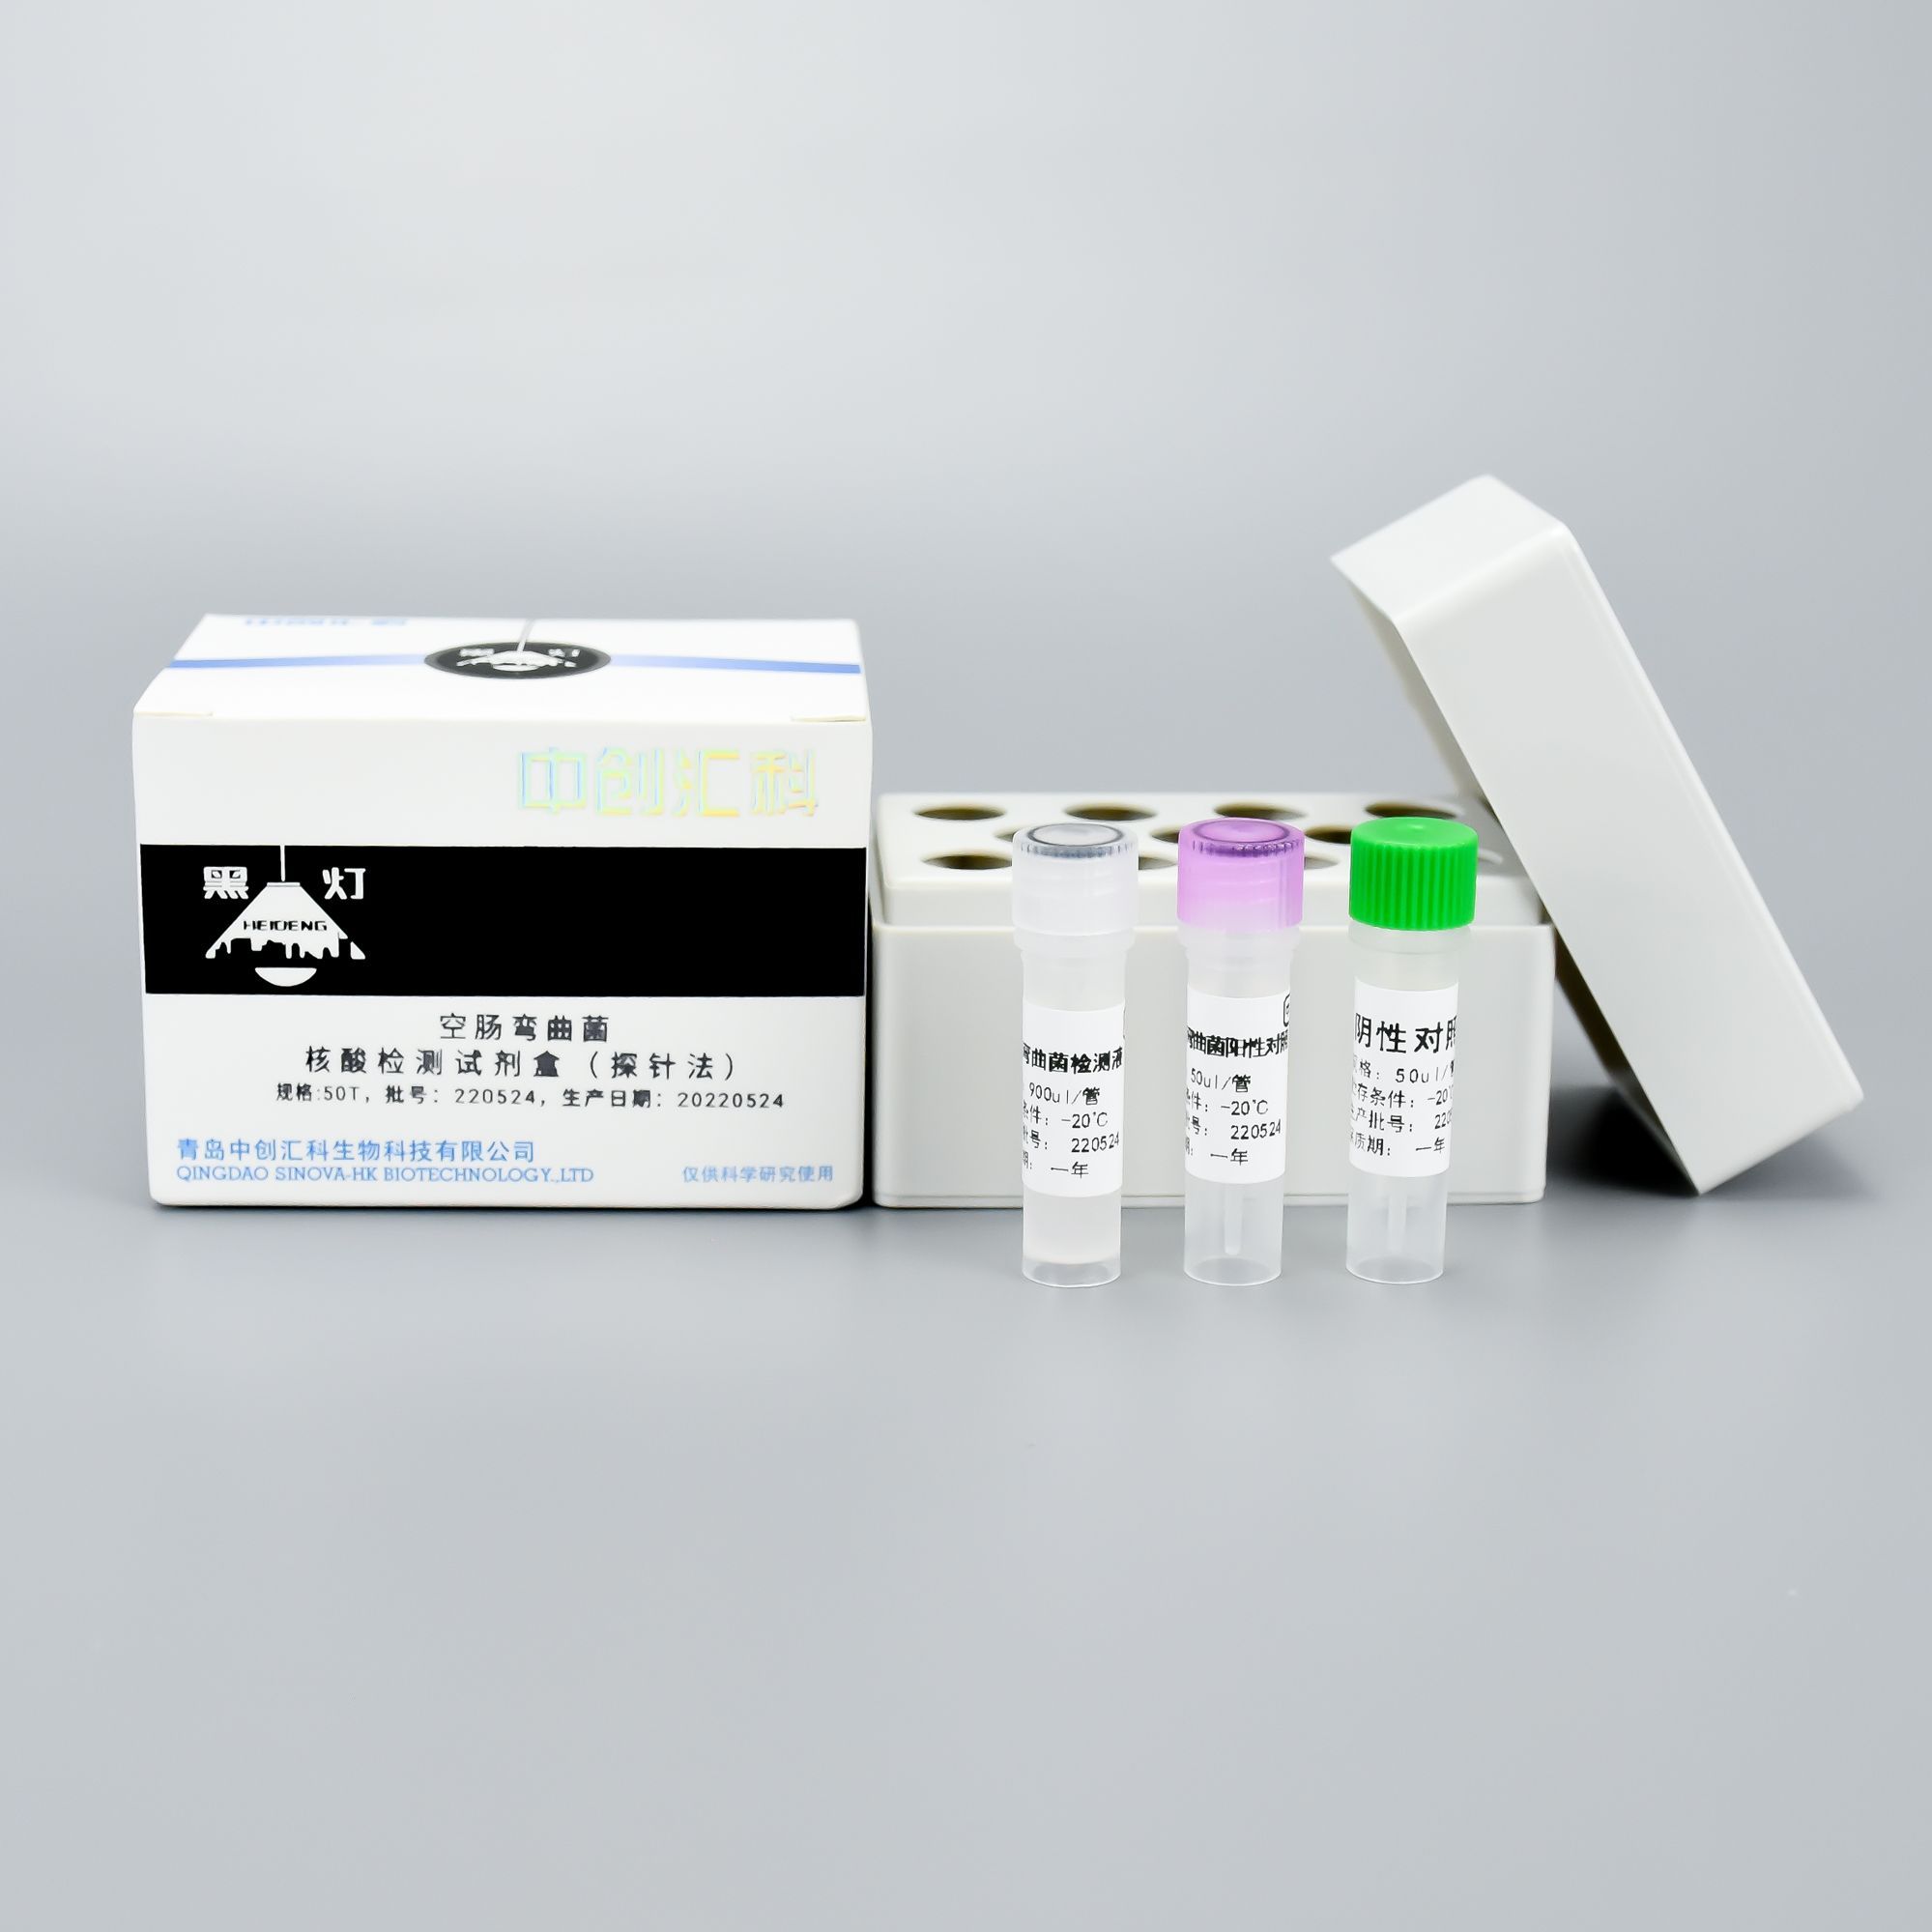 空肠弯曲菌核酸检测试剂盒（探针法）